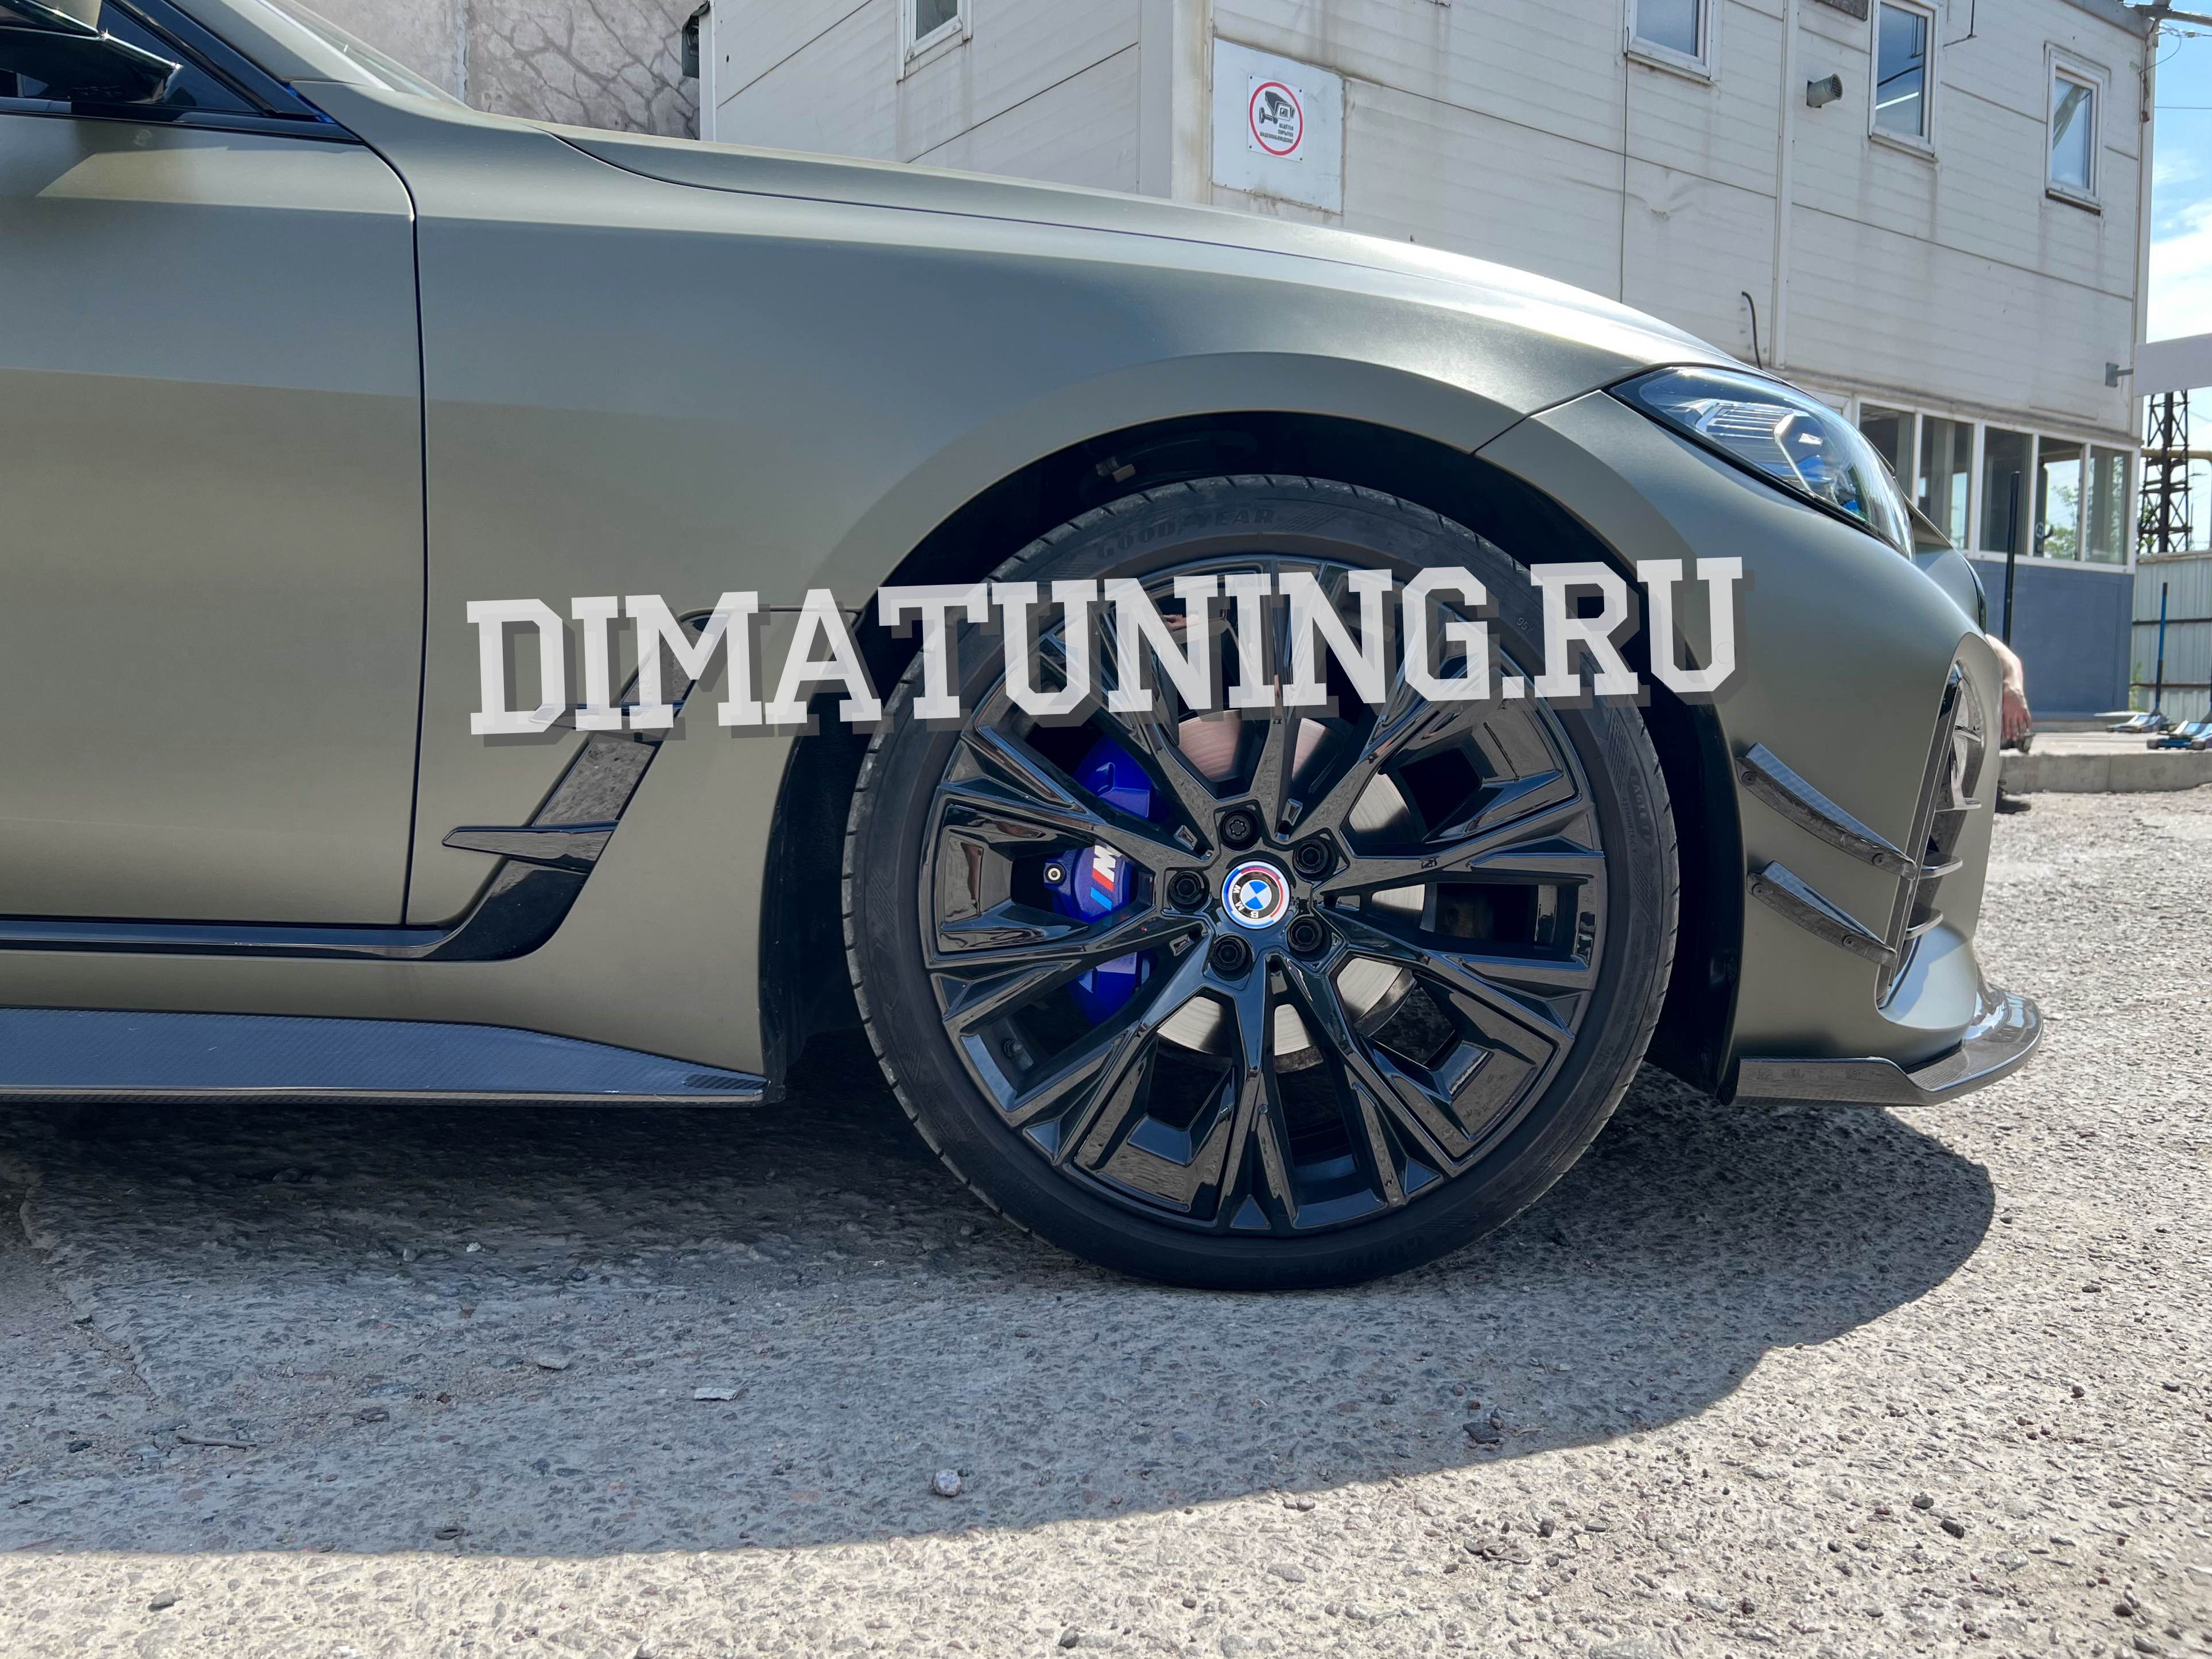 Накладки на суппорта BMW 4 series gran coupe. Синие в стиле M Performance. Купить в интернет-магазине